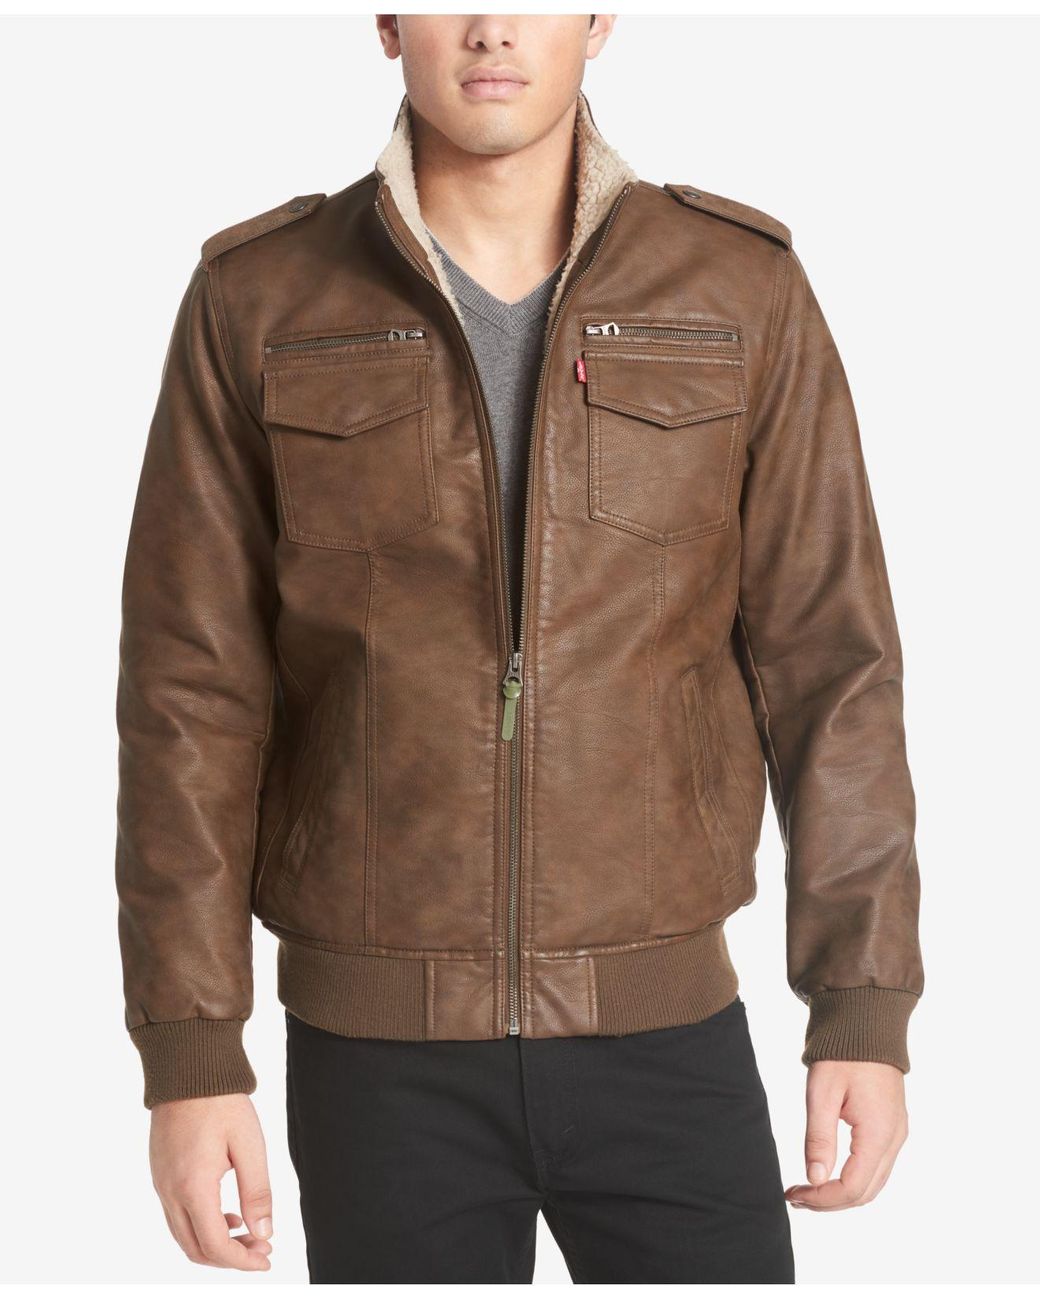 Actualizar 48+ imagen levi's faux leather jacket - Abzlocal.mx